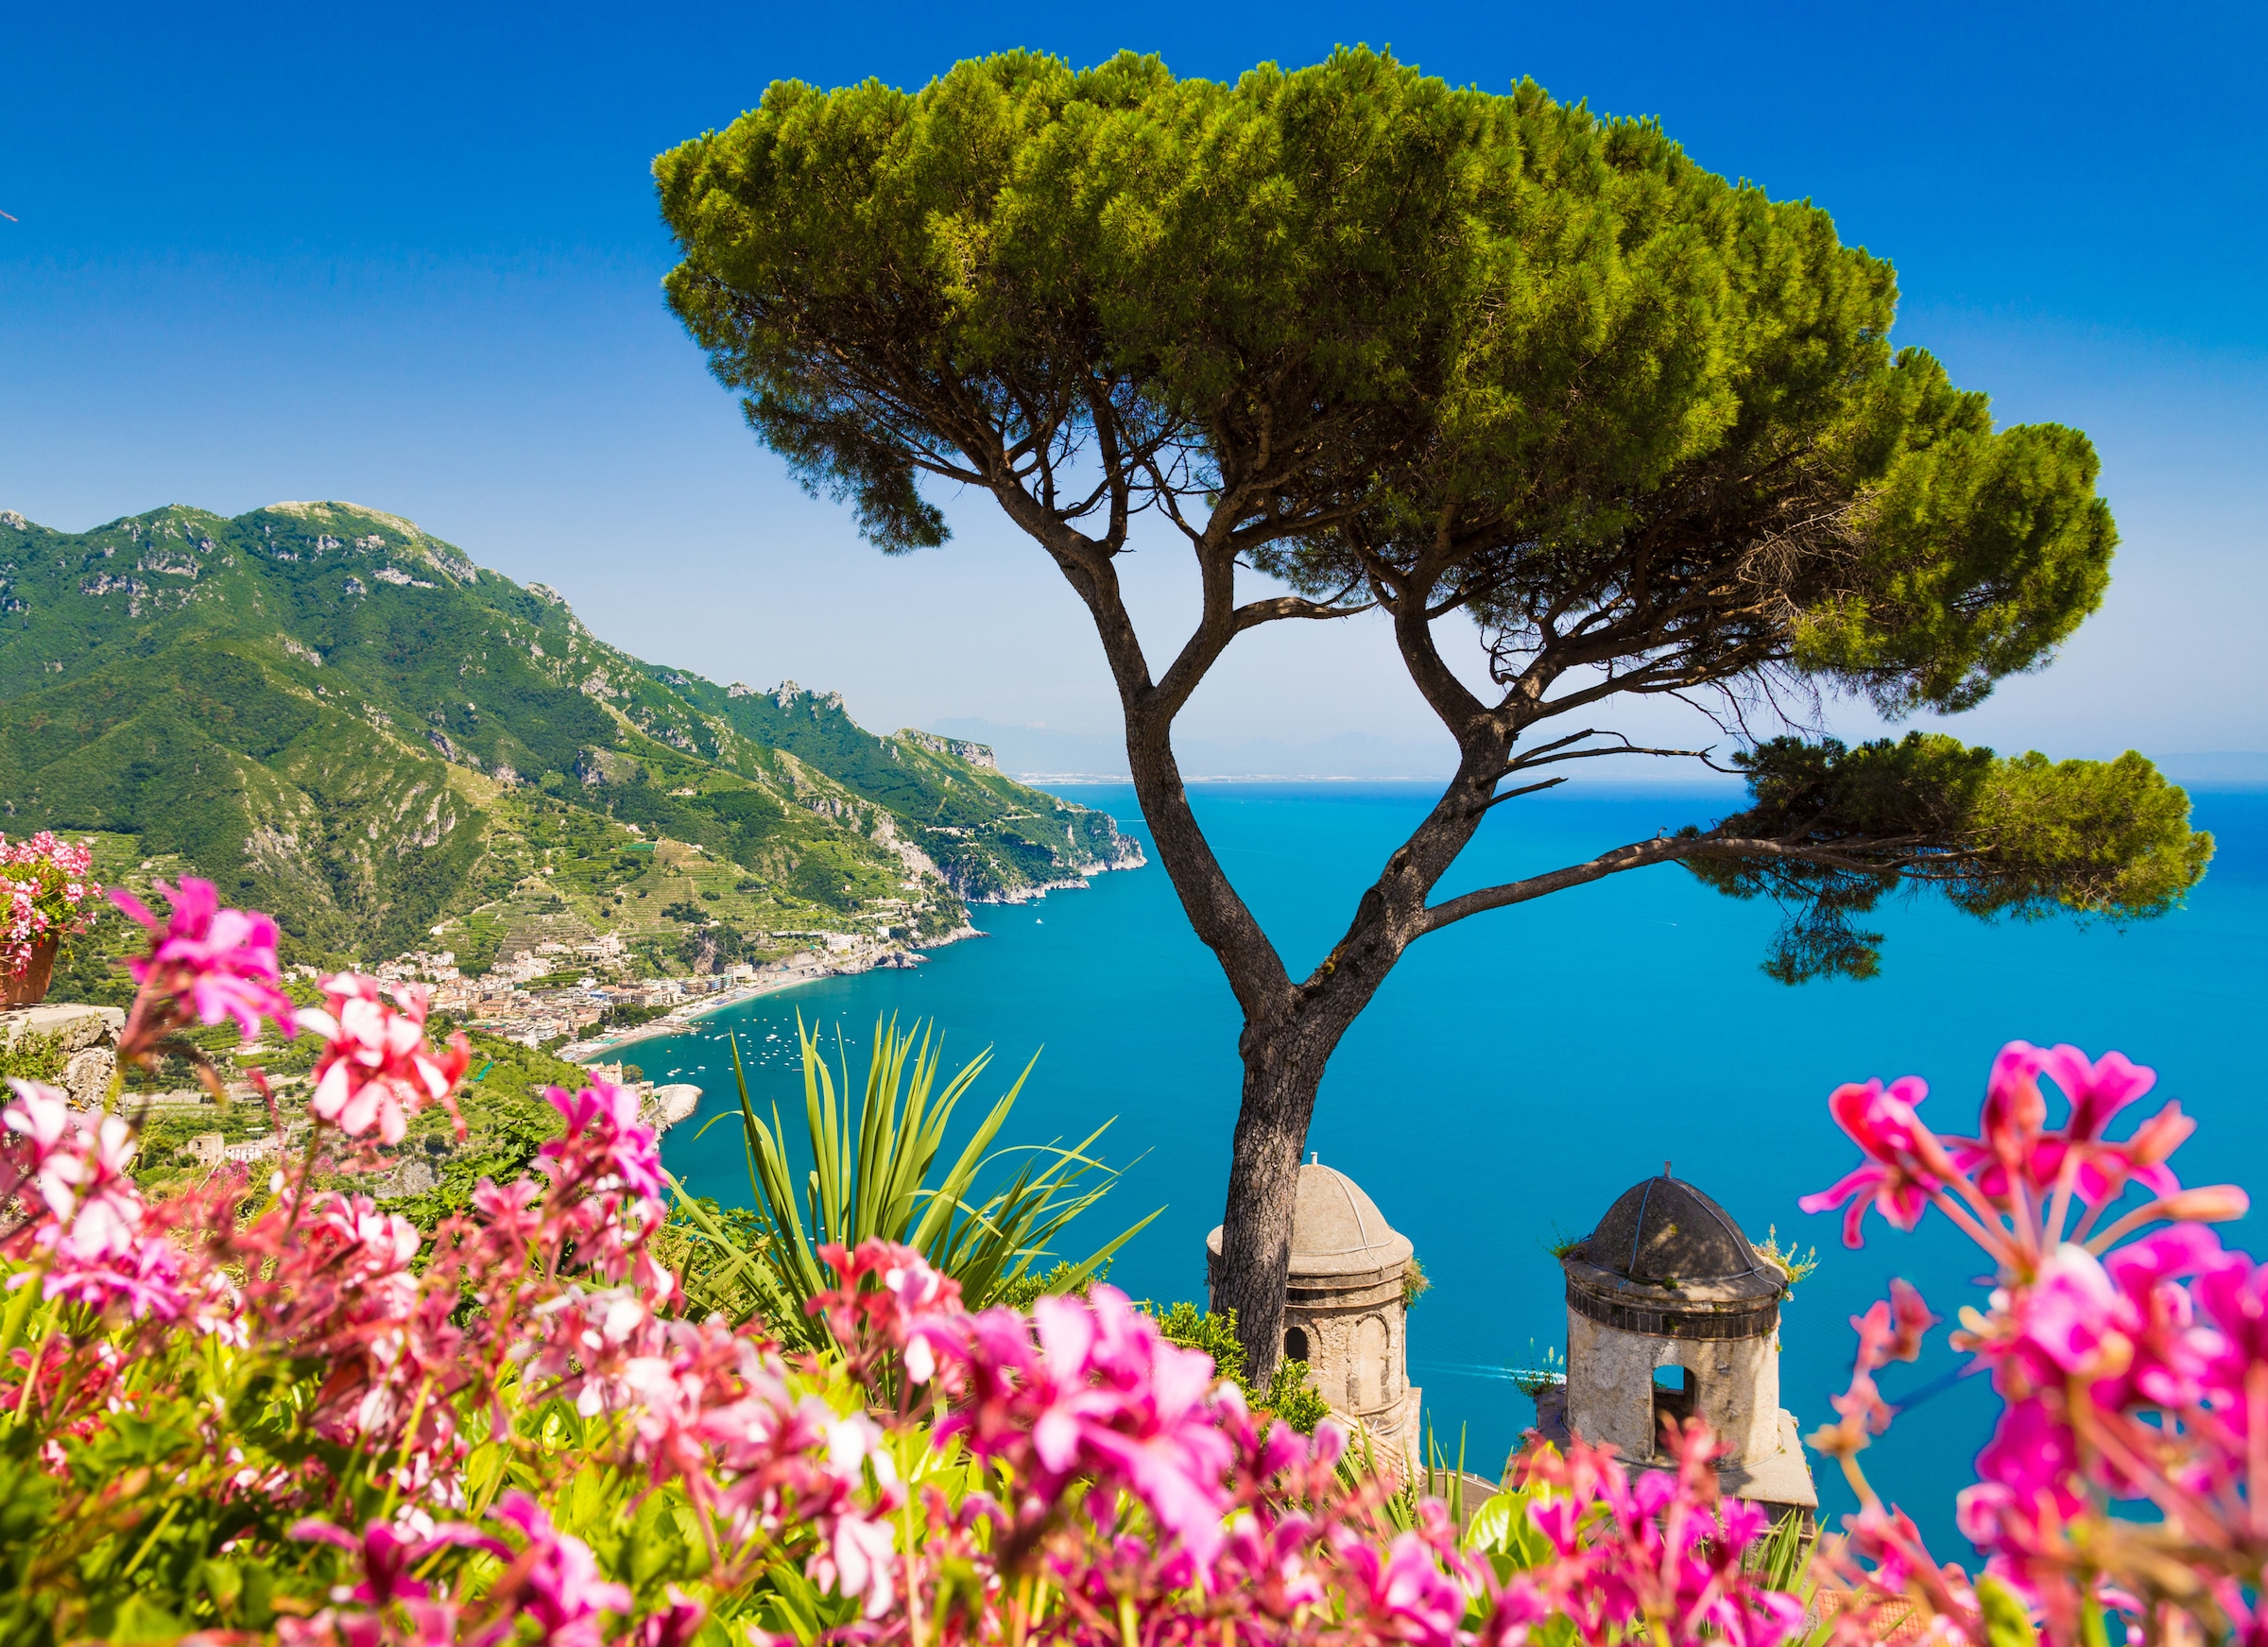 Fototapete »Campania Amalfi Coast«